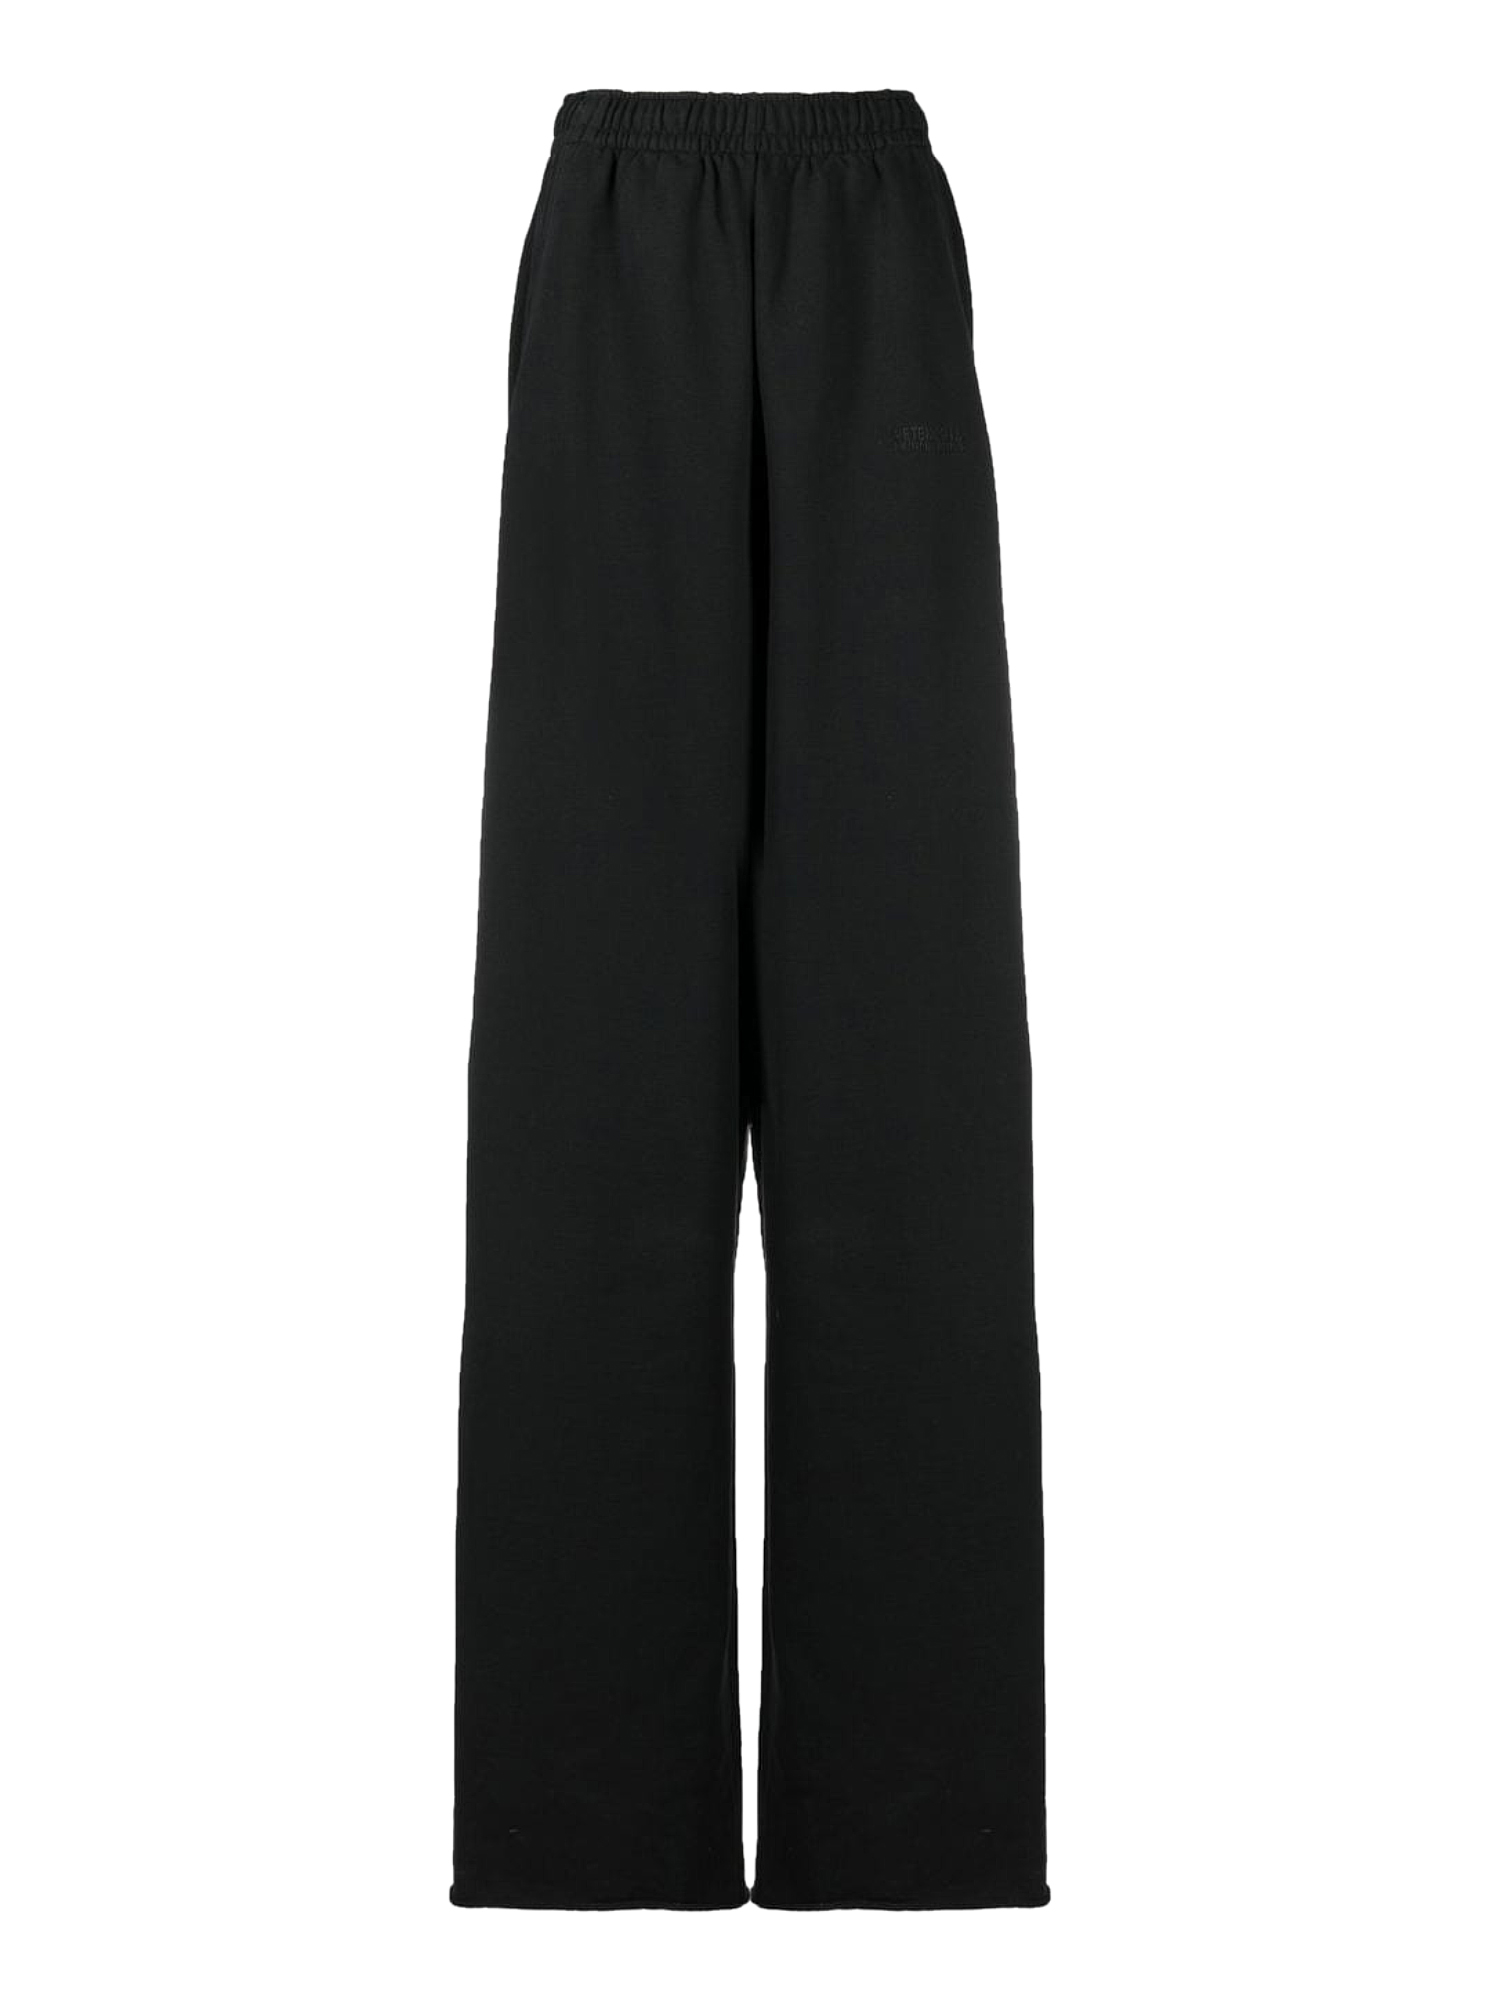 Pantalons Pour Femme - Vetements - En Cotton Black - Taille:  -